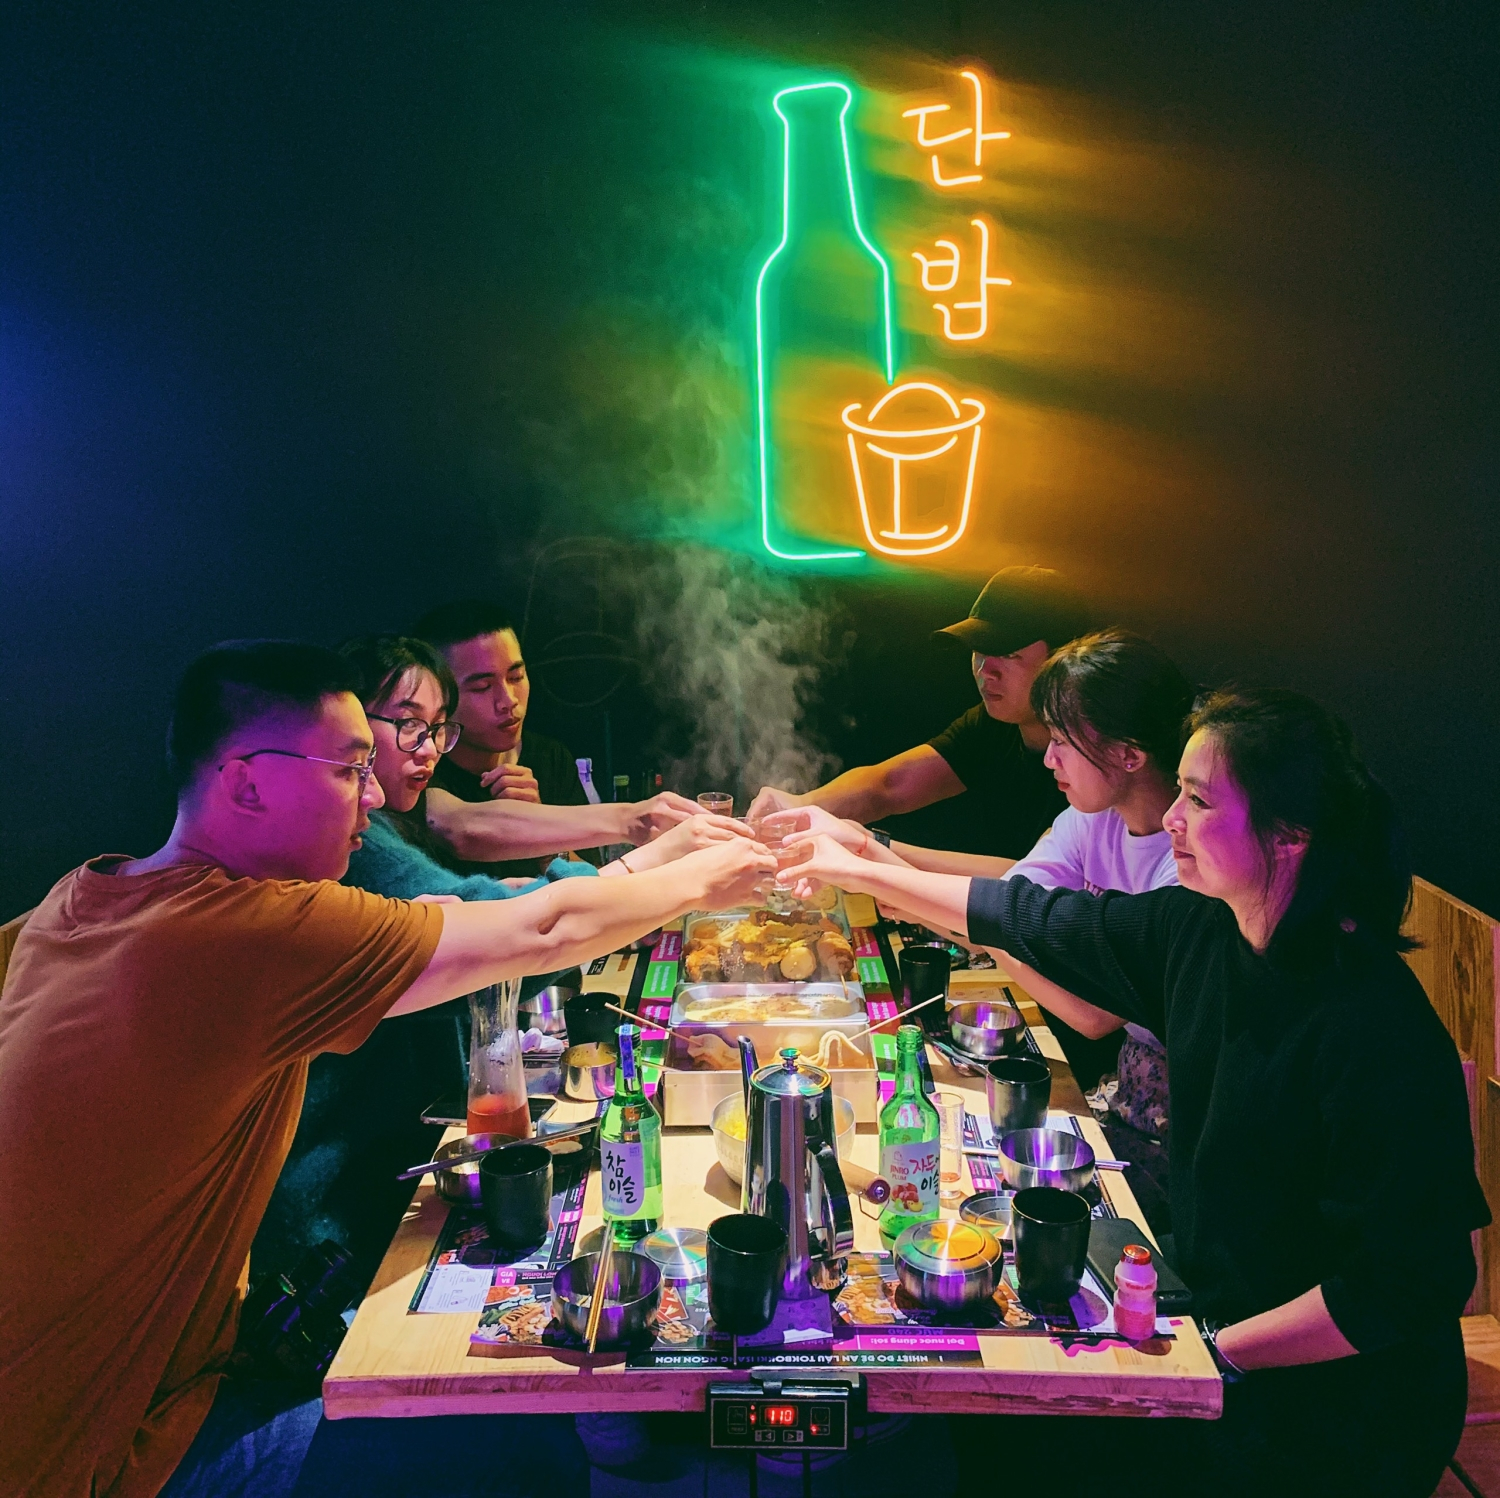 Tận hưởng không khí vui nhộn và sôi động tại quán nhậu Hàn Quốc trên hình ảnh này. Với những món ăn ngon miệng và chất lượng, bạn sẽ có một bữa tiệc thú vị và đầy ý nghĩa với bạn bè và gia đình của mình.